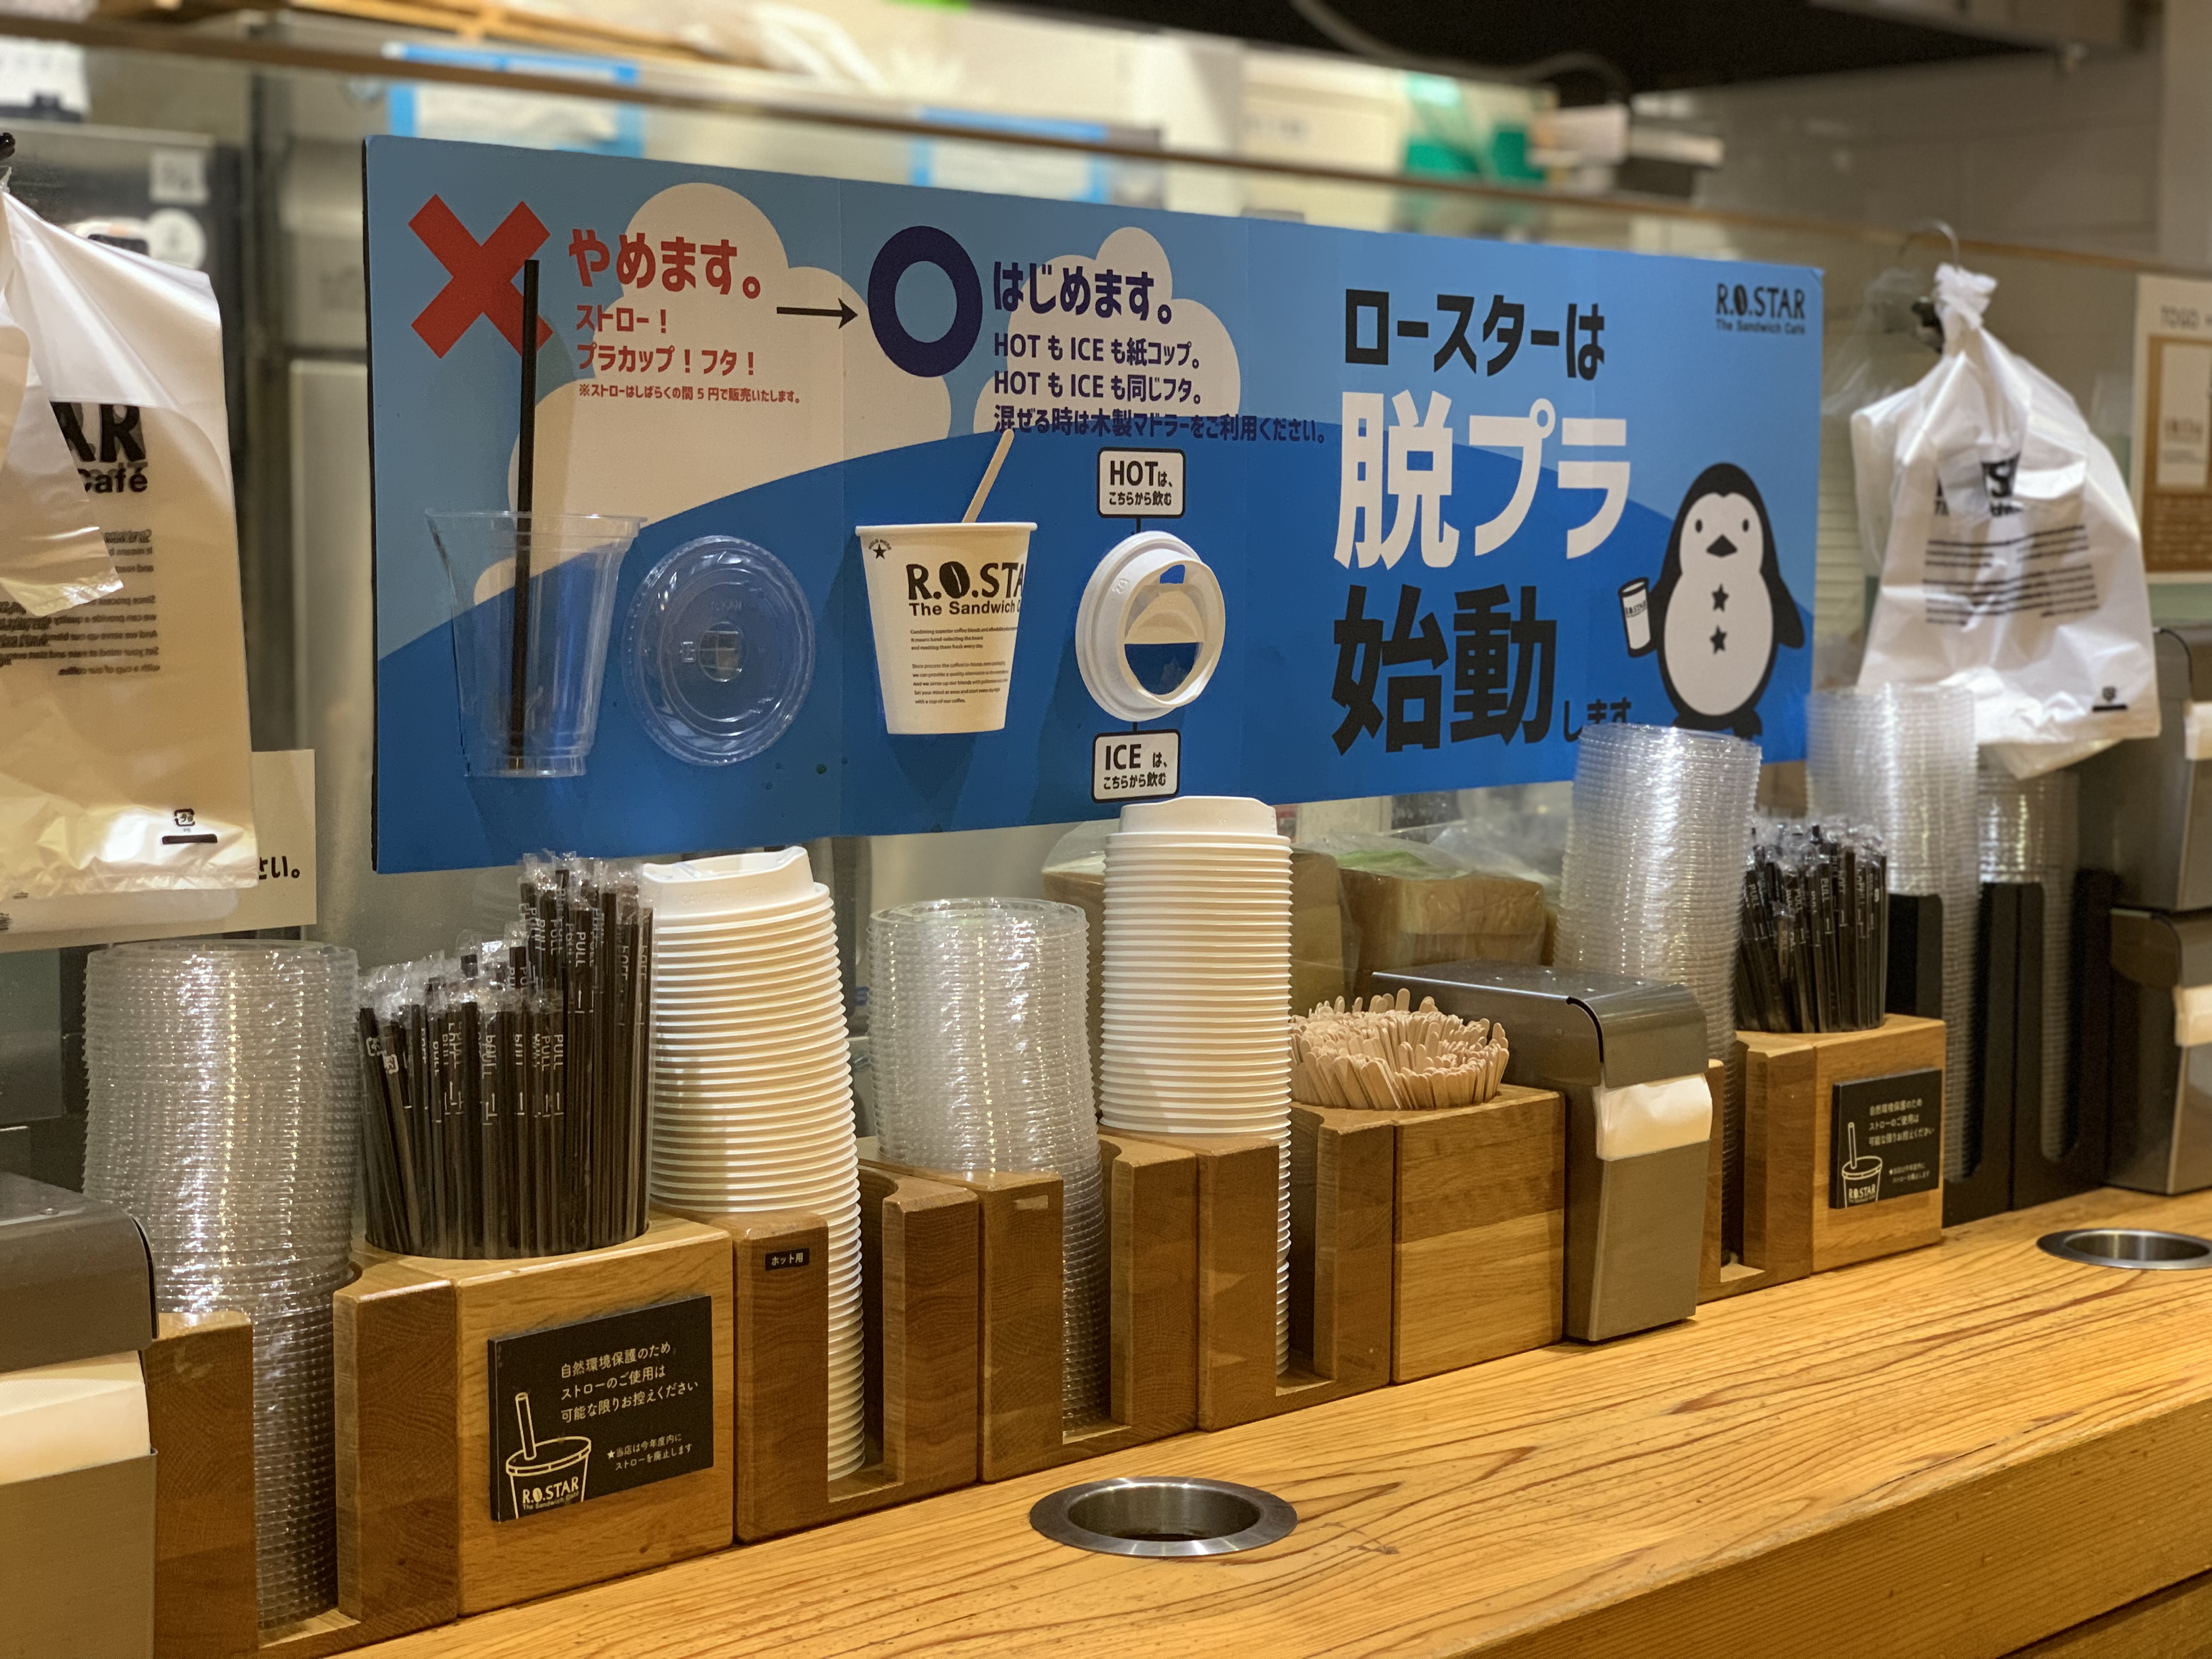 脱プラ対策 1日00組来店のカフェr O Star豊洲店でストロー プラスチックカップを廃止しました 株式会社ノンピのプレスリリース